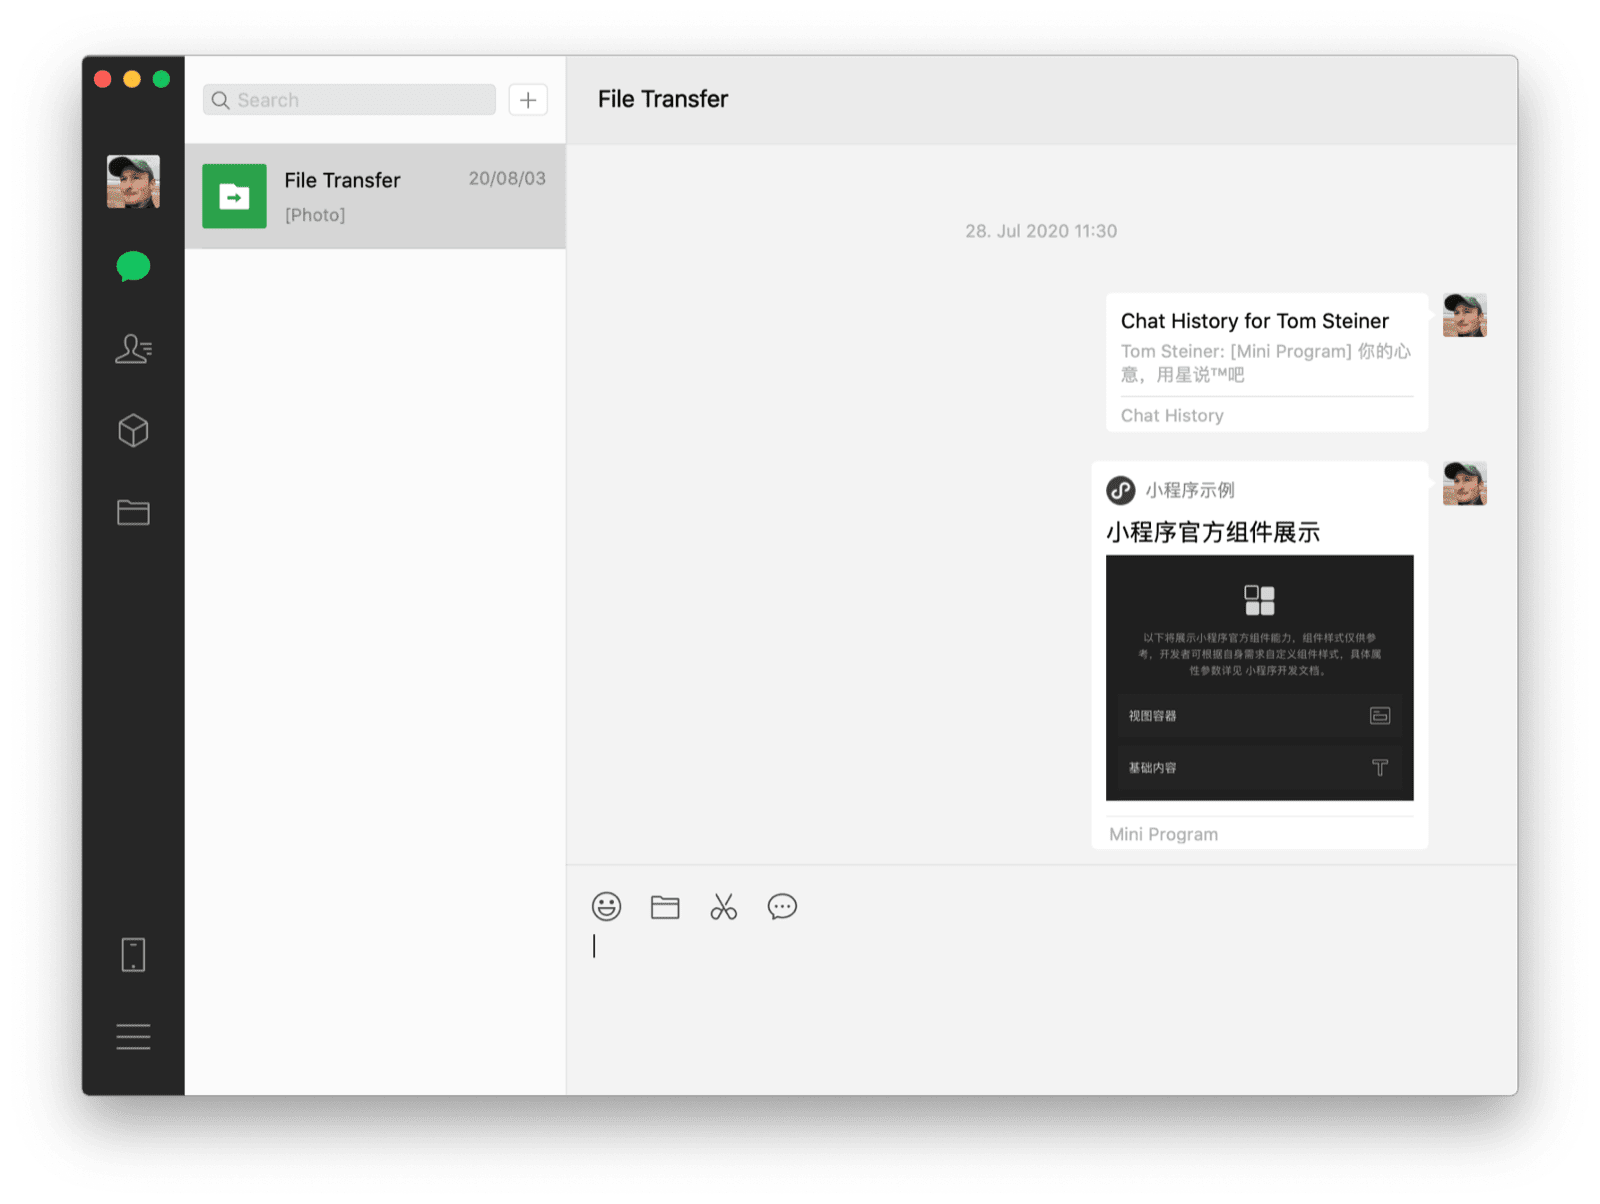 ไคลเอ็นต์เดสก์ท็อป WeChat macOS แสดงแชทกับตนเองผ่านมินิแอปที่แชร์และประวัติการแชทเป็นข้อความ 2 ข้อความที่มองเห็นได้